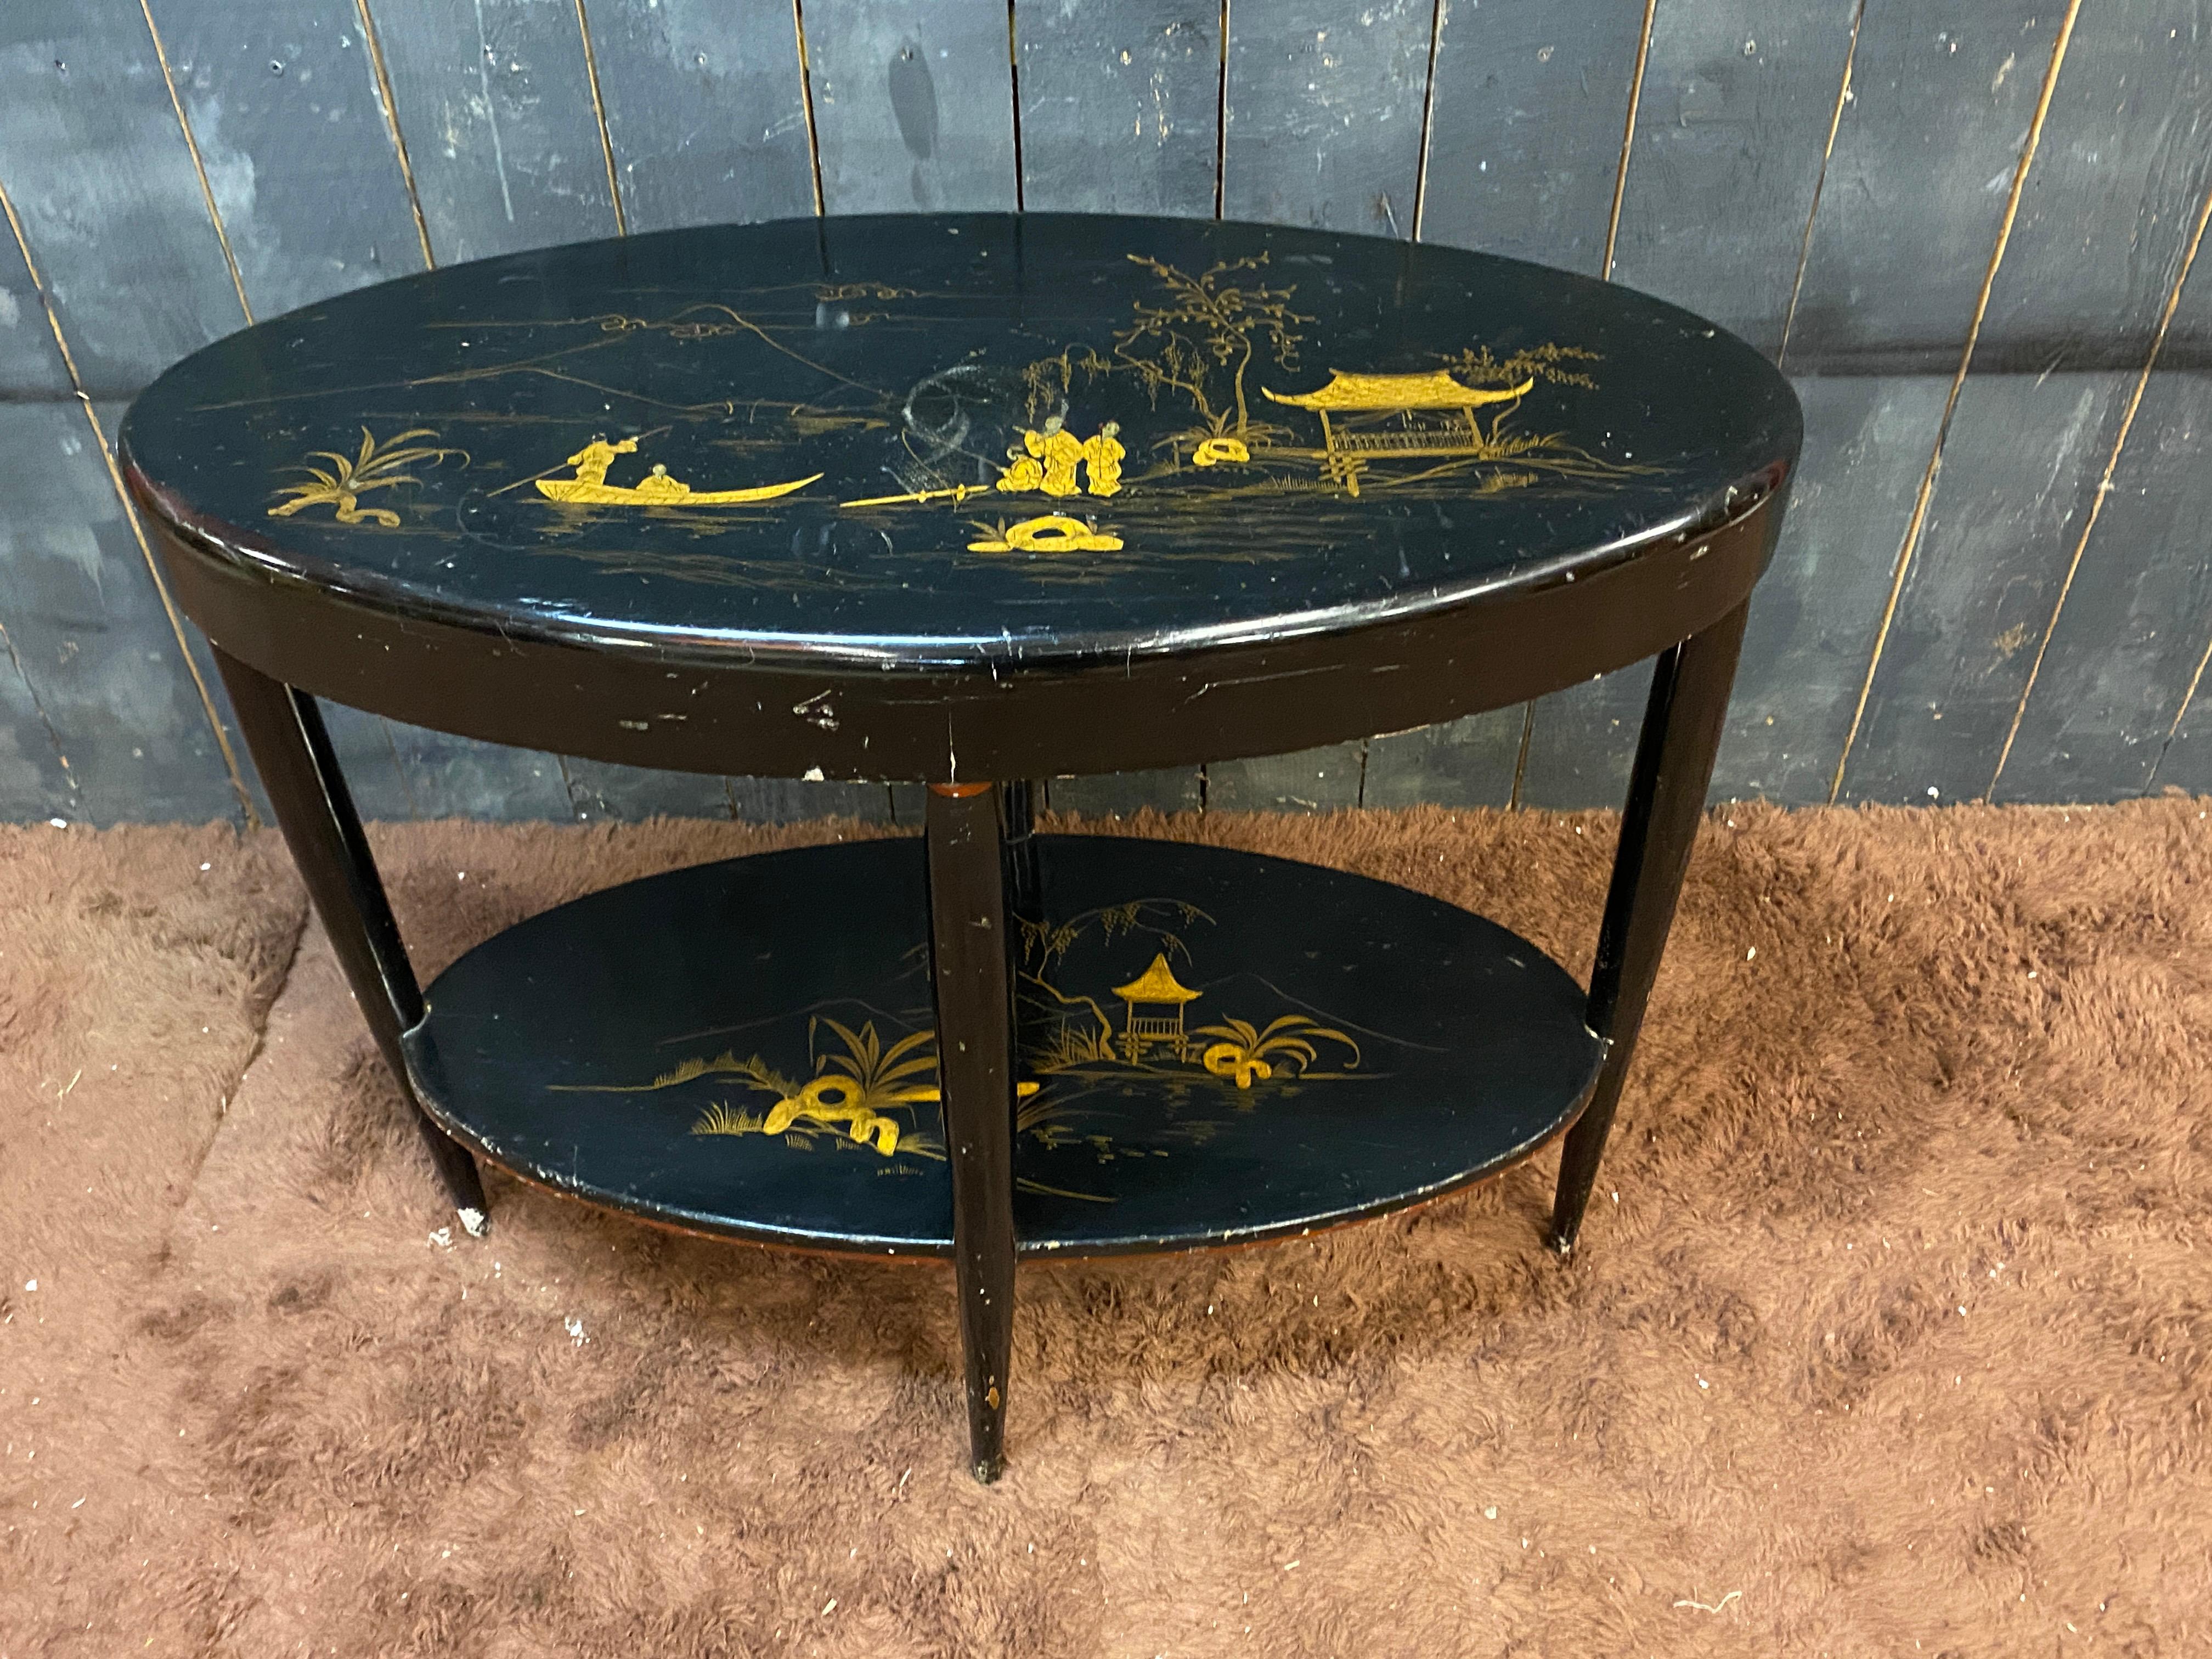 Table console ou guéridon haut en bois laqué noir et or, à décor chinois circa 1930.
Manque de peinture et marques sur le dessus